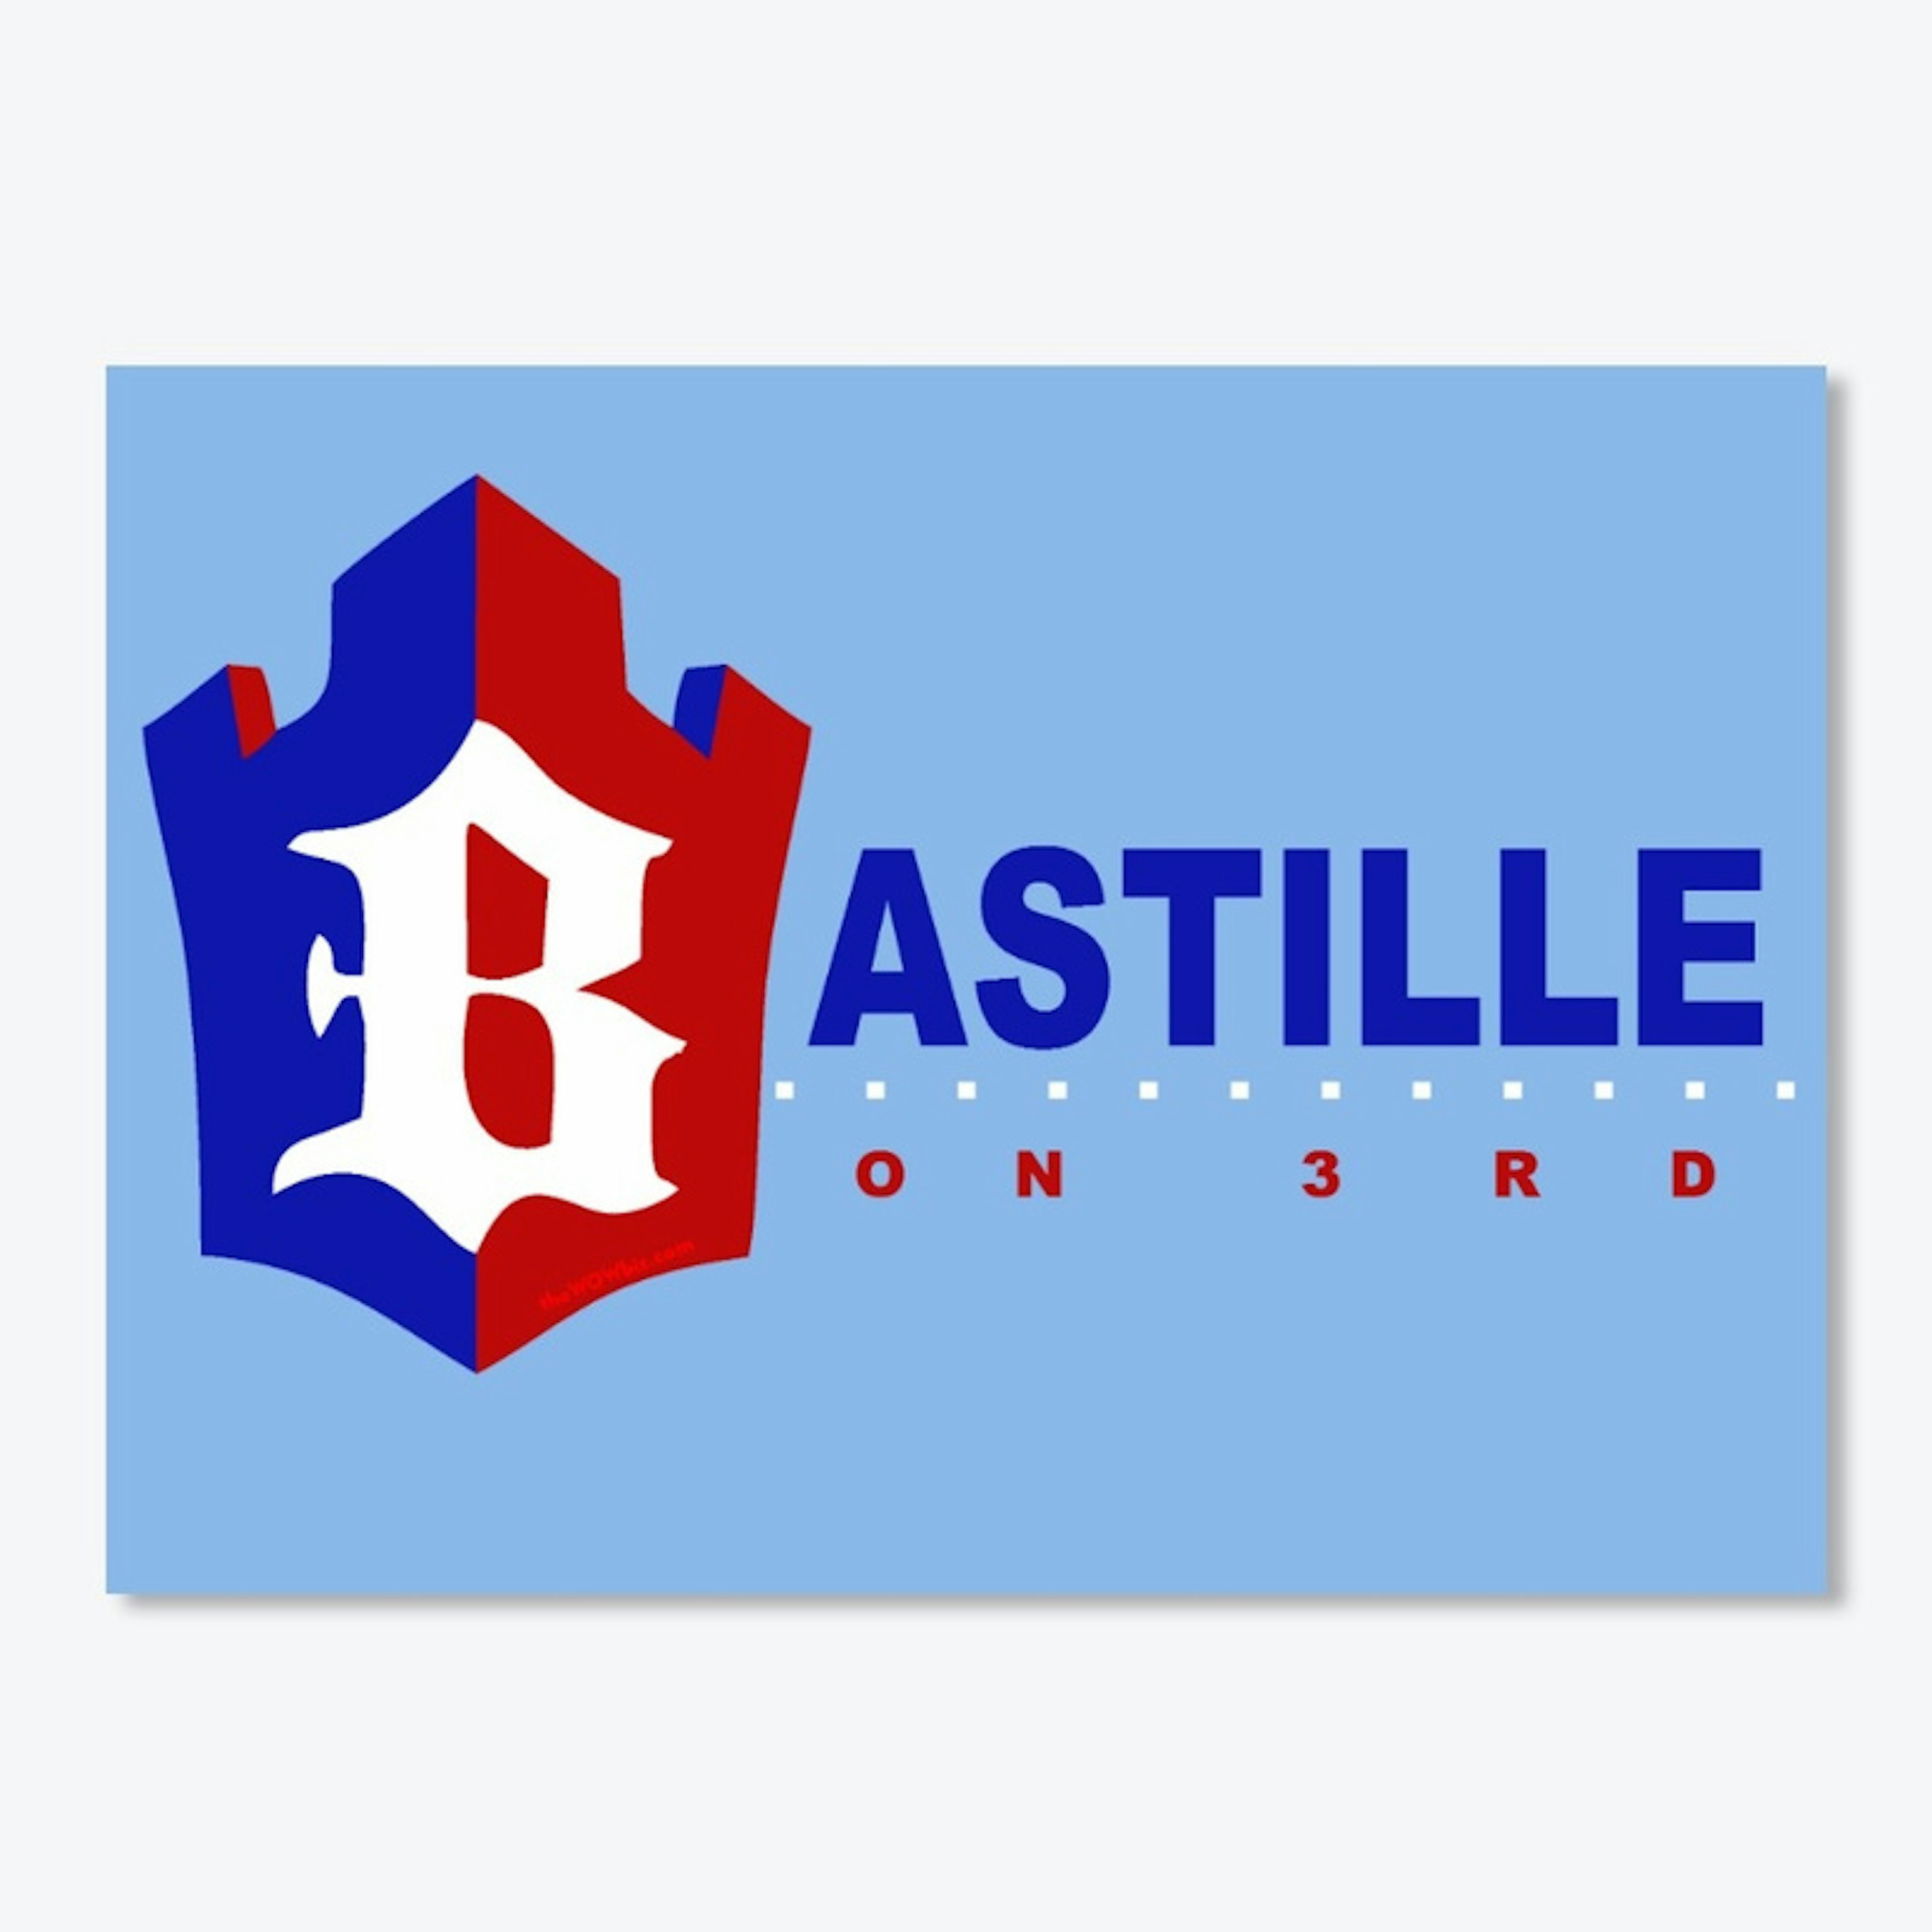 BastilleLV